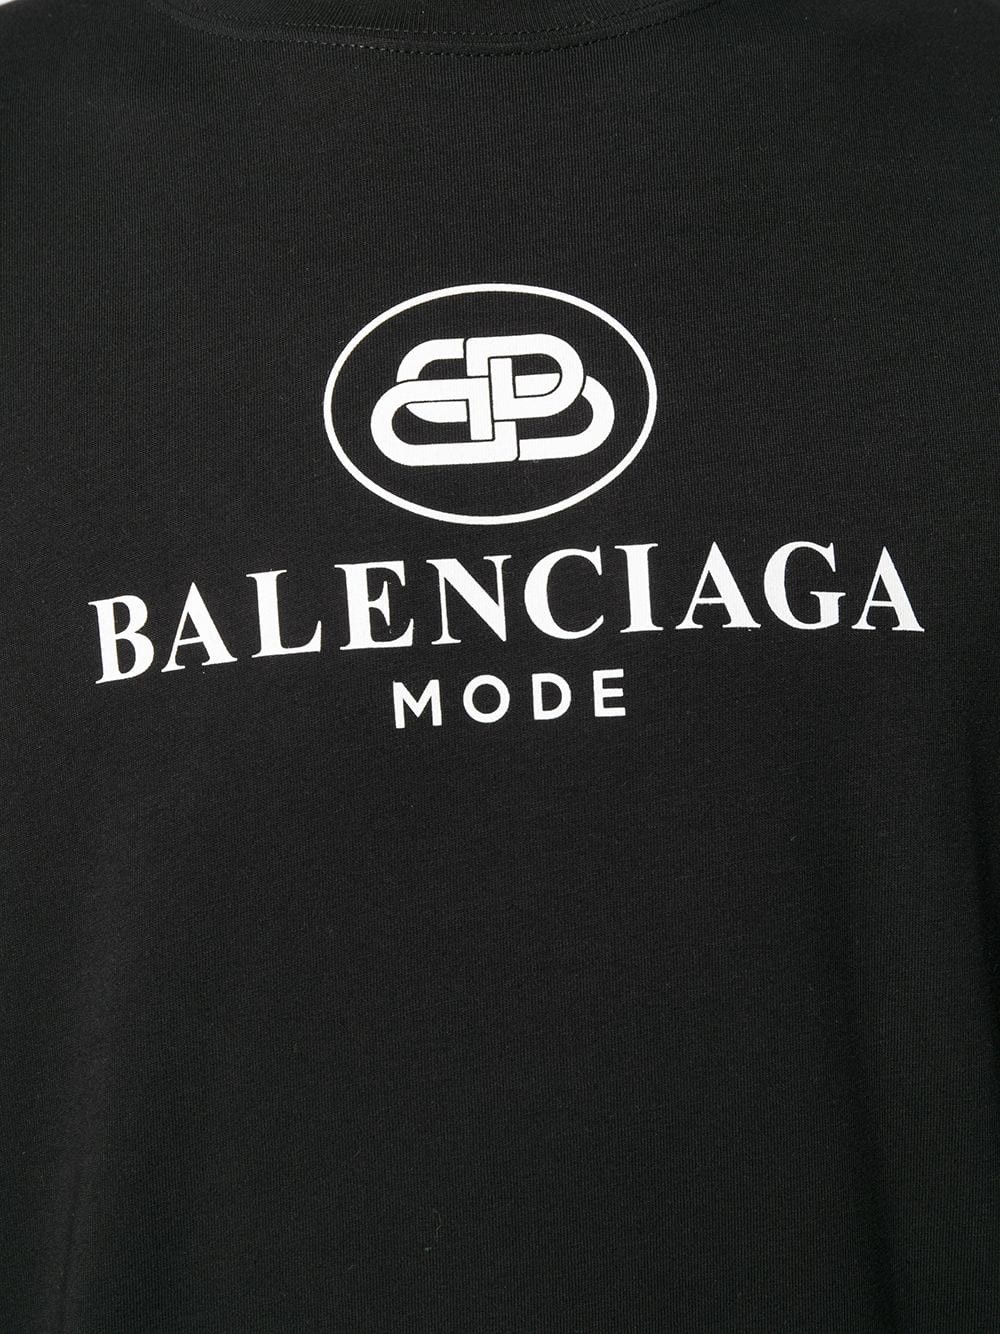 Balenciaga Logo / File:Balenciaga Logo.svg - Wikimedia Commons / Logo ...